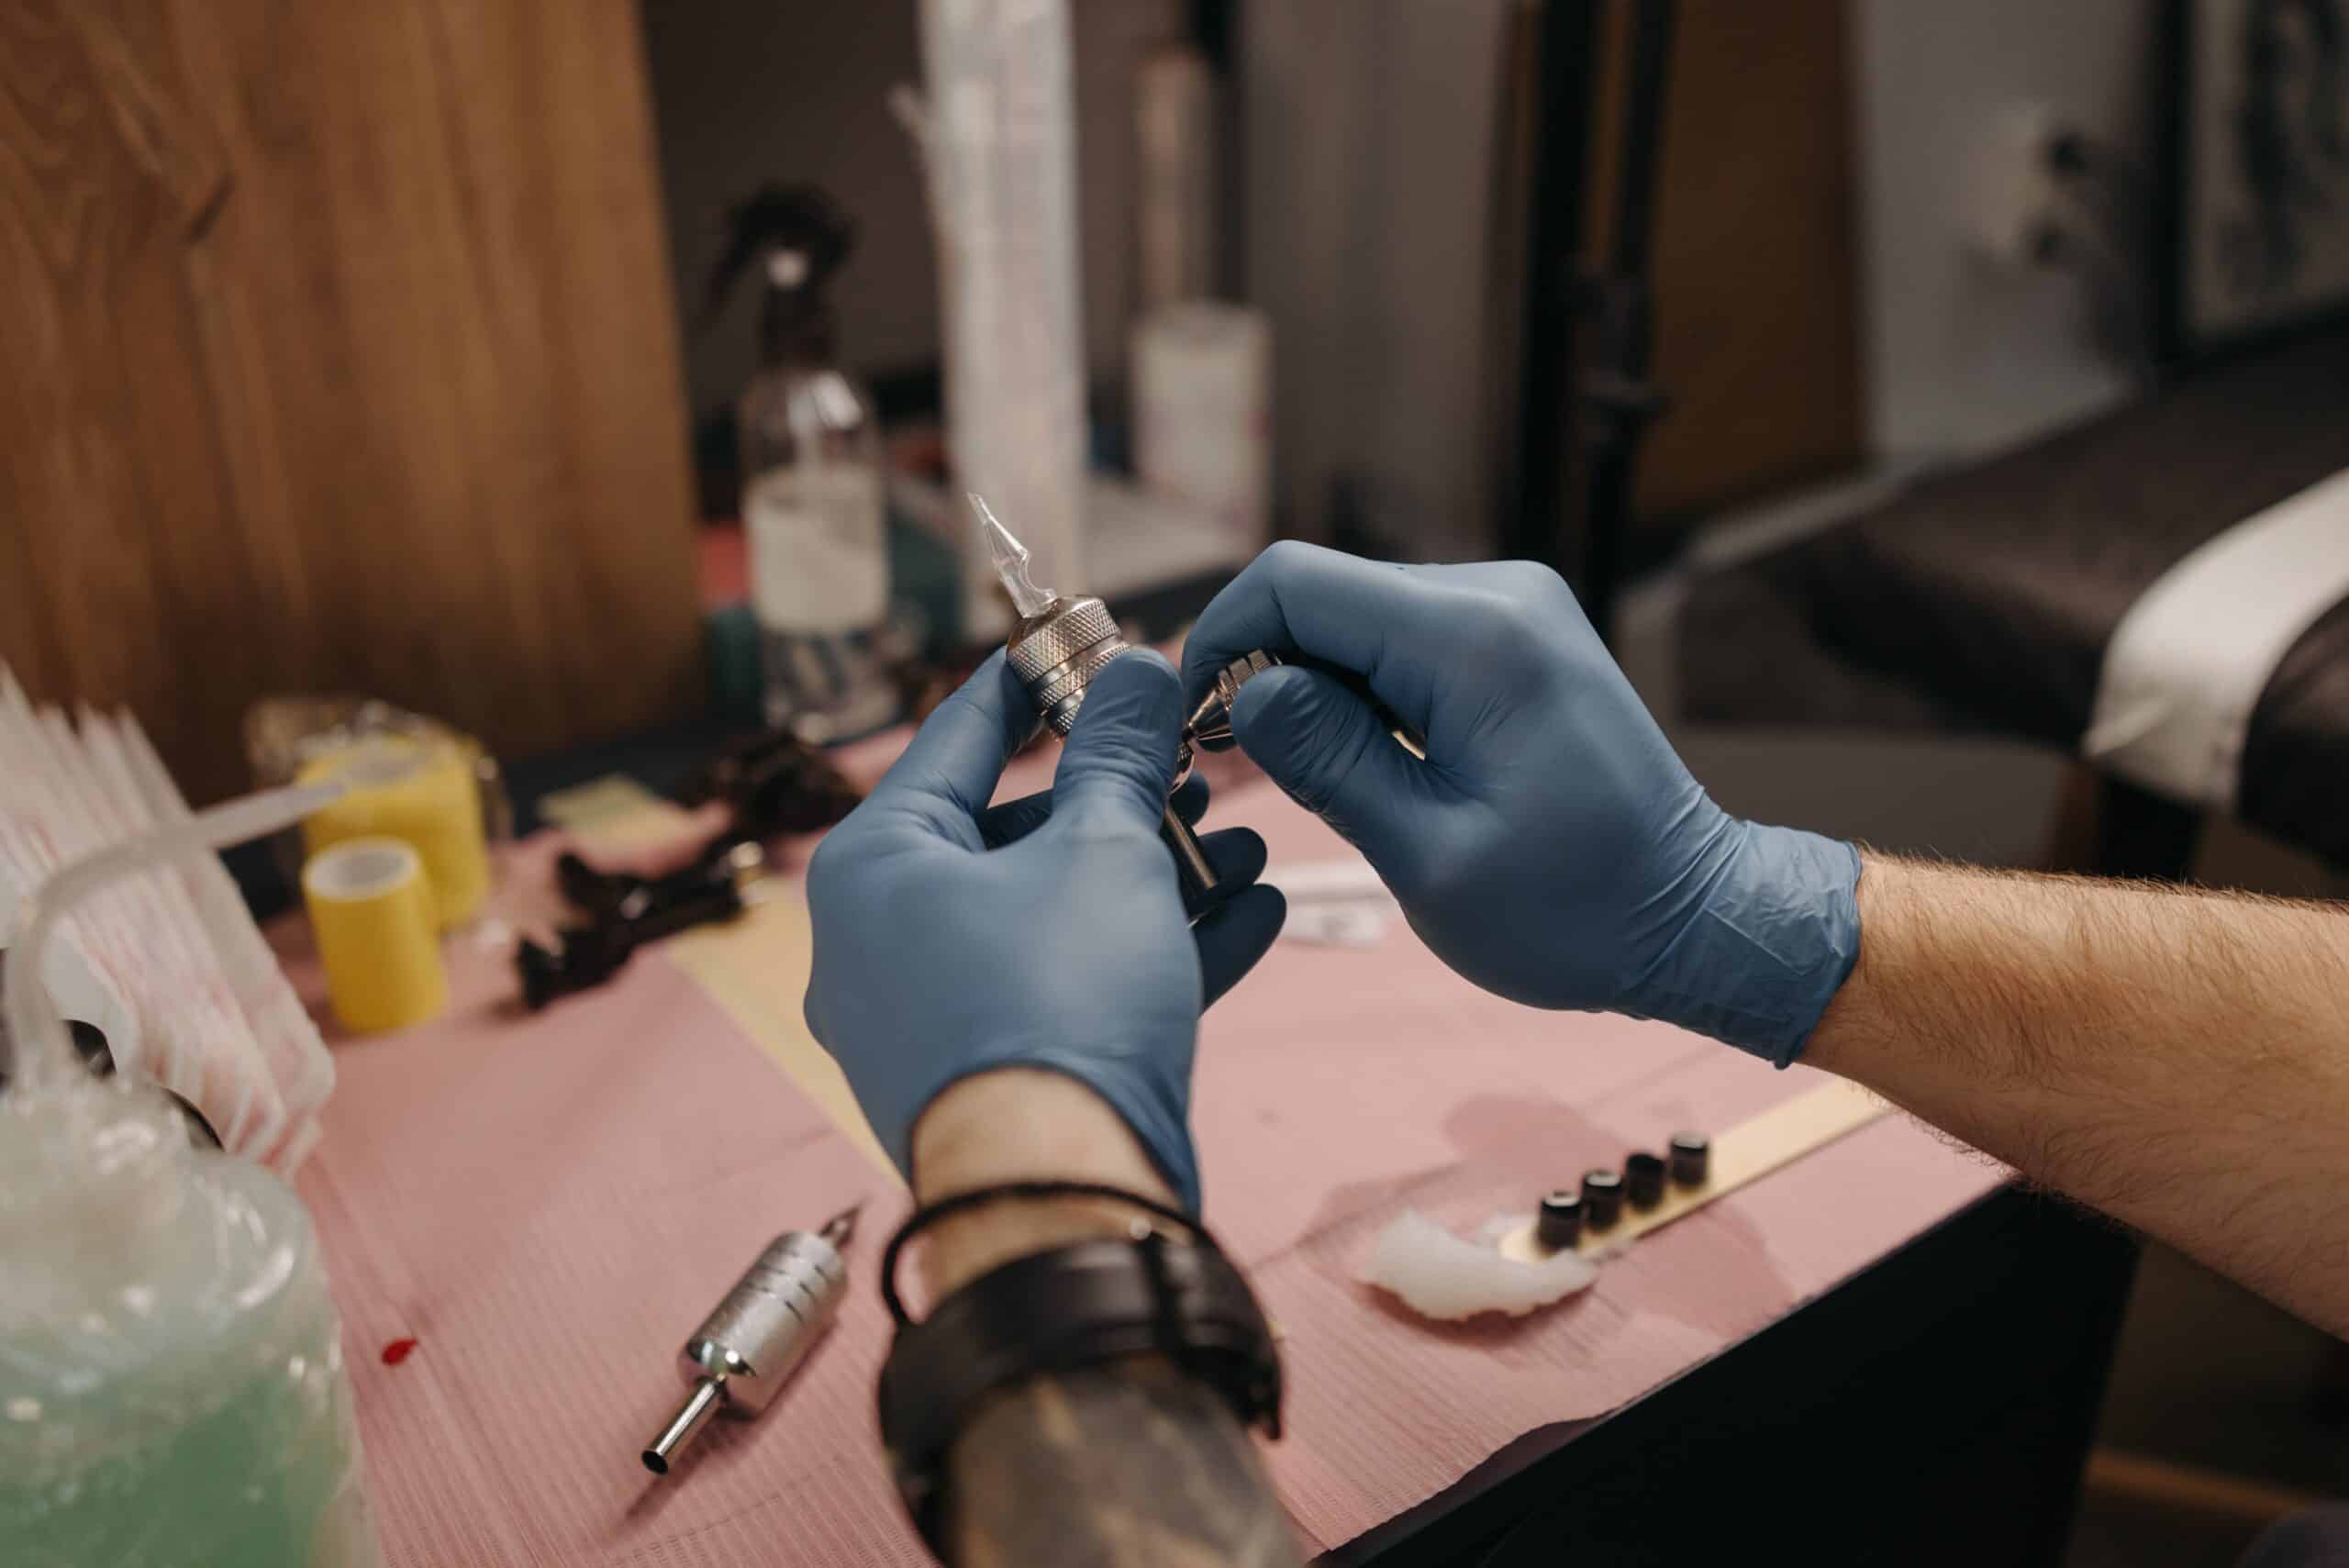 tattoo artist preparing tattoo equipment